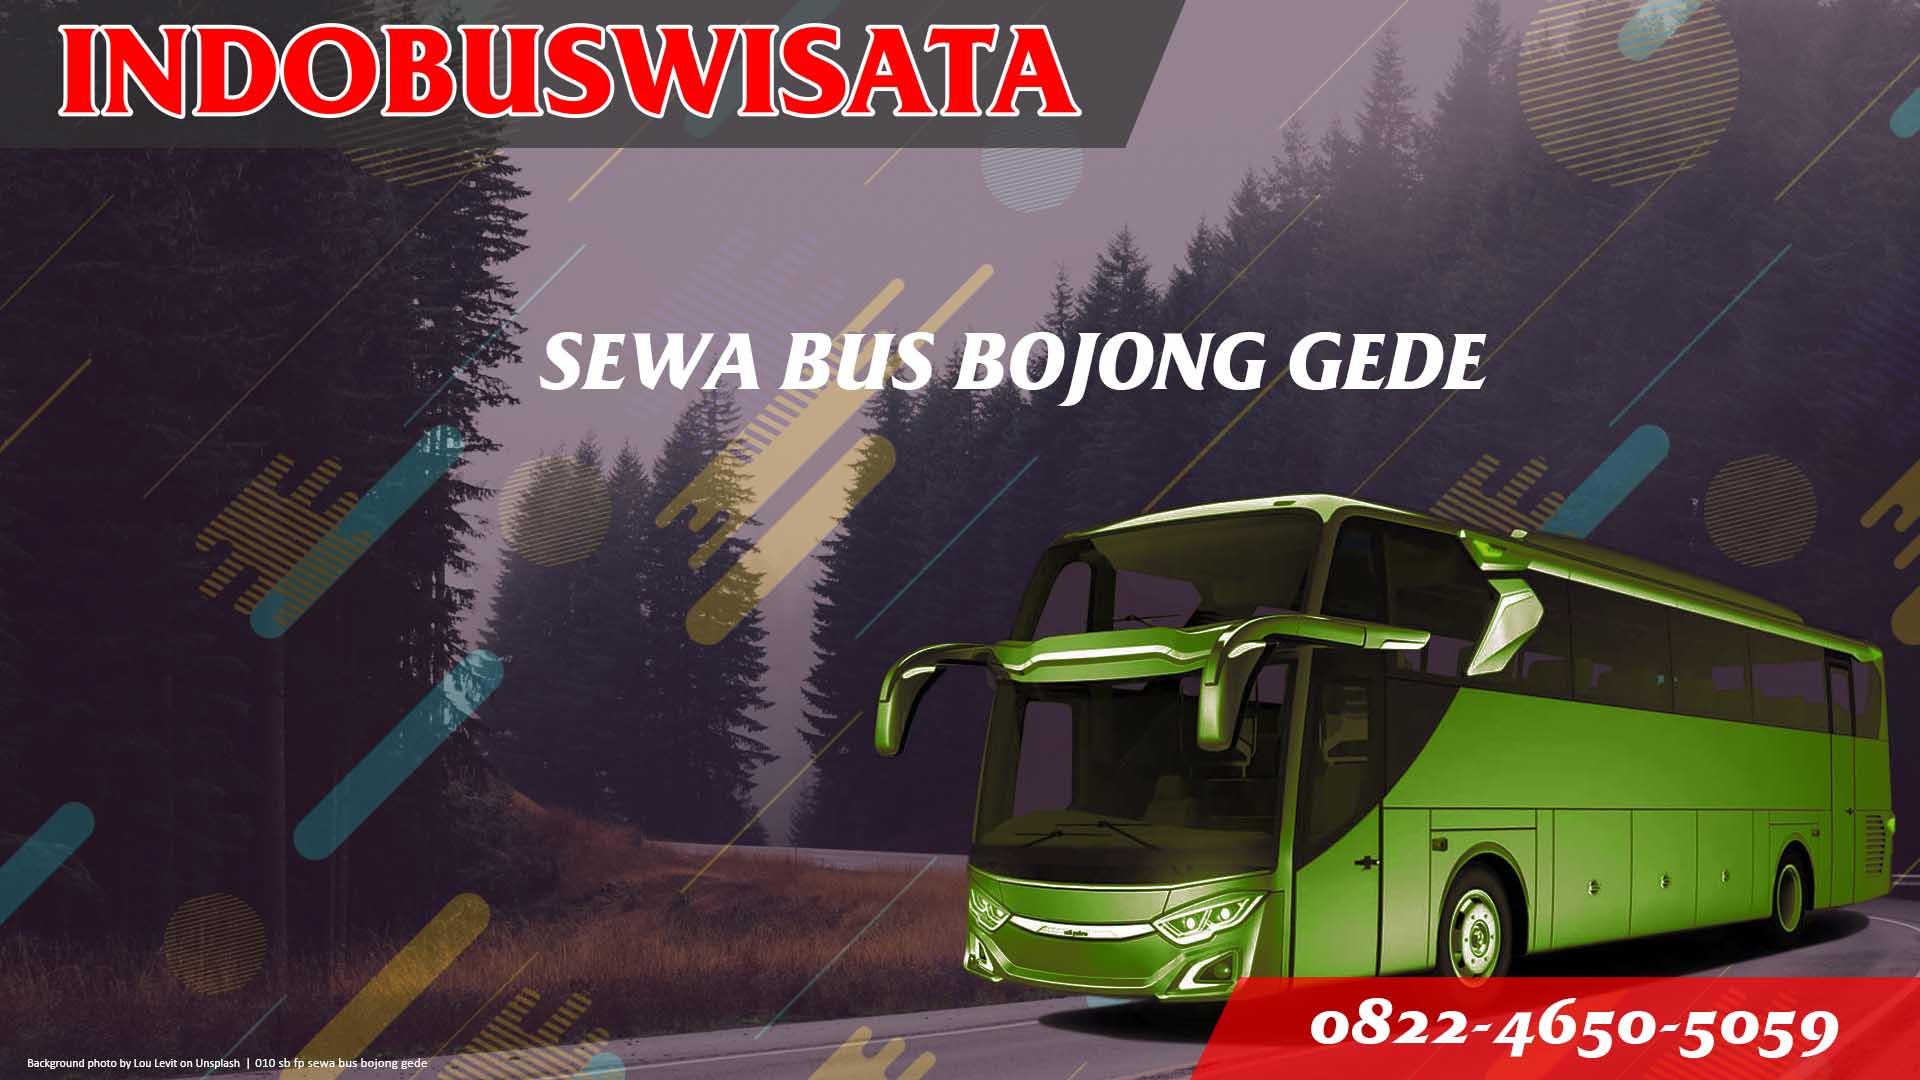 010 Sb Fp Sewa Bus Bojong Gede Jb 3 Hdd Indobuswisata